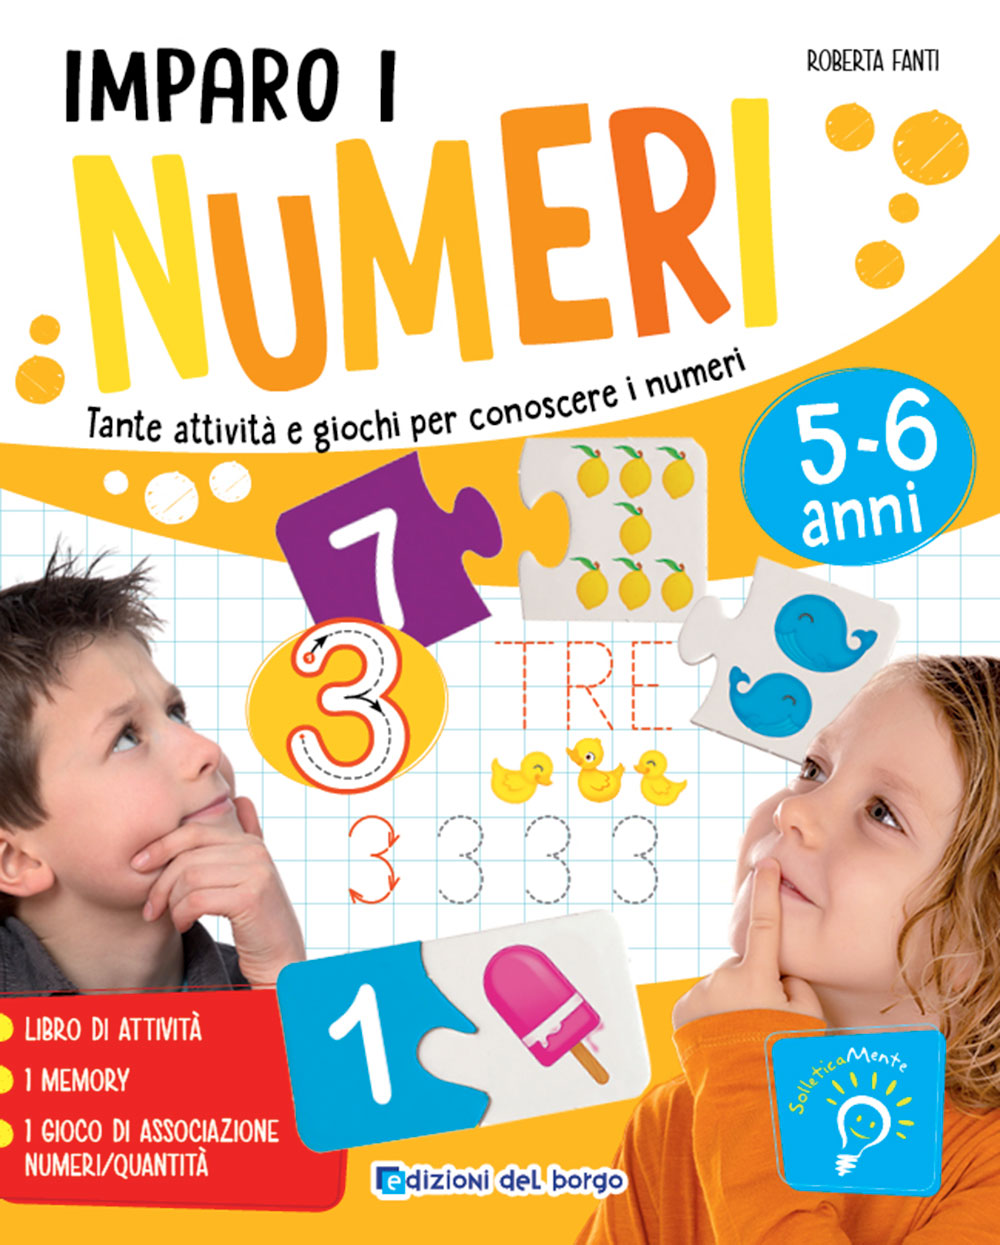 Imparo i numeri::Tante attività e giochi per conoscere i numeri